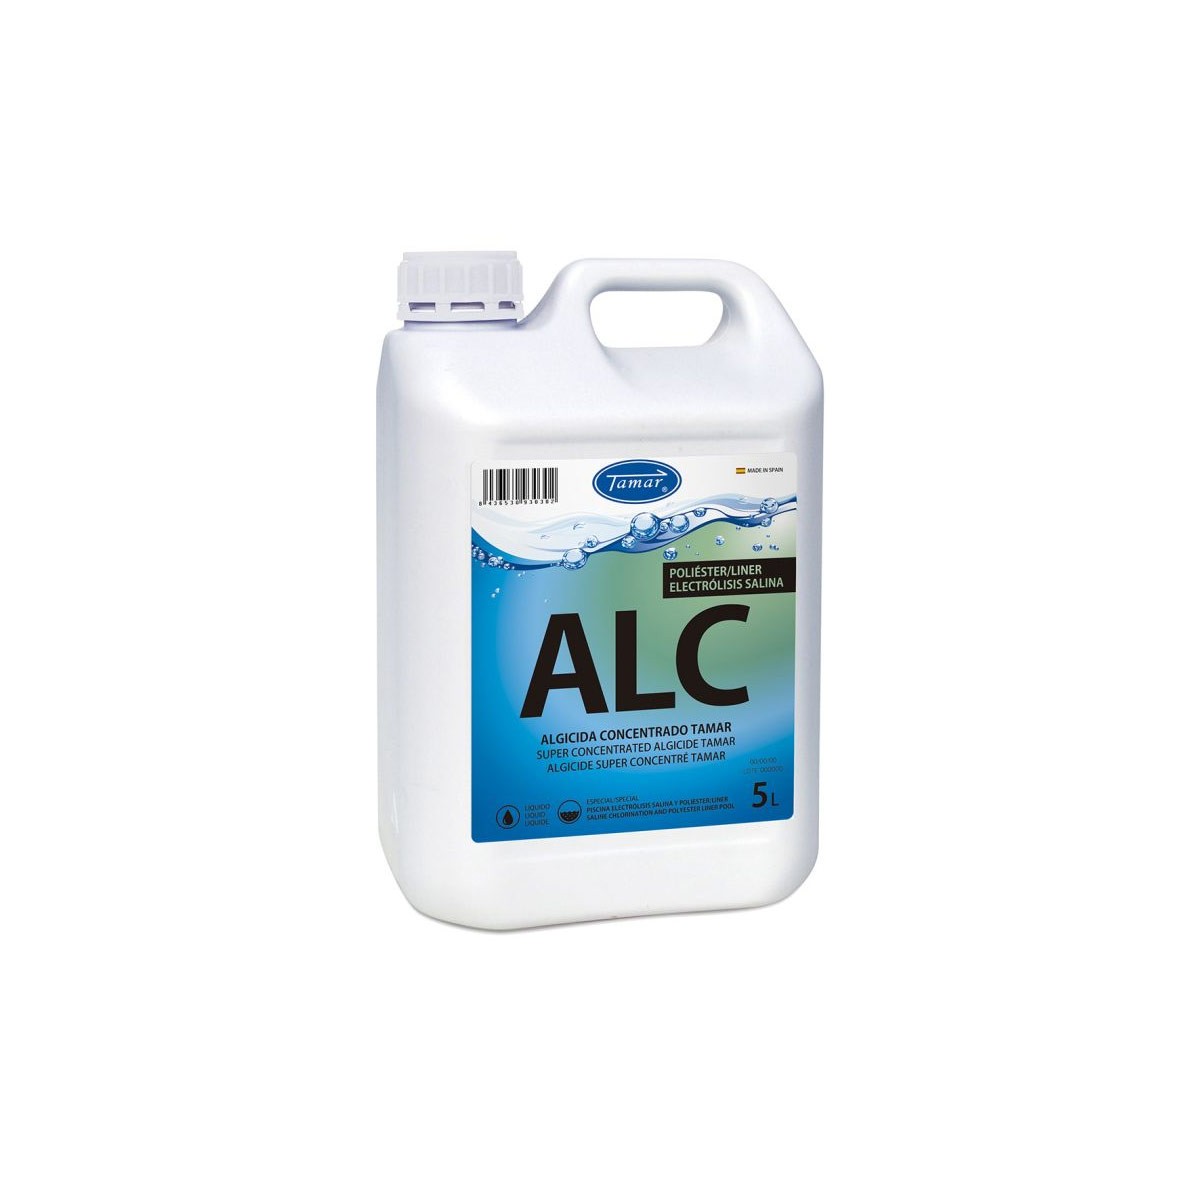 Algicida sin cobre / cloracion salina poliester/liner garrafa 5l